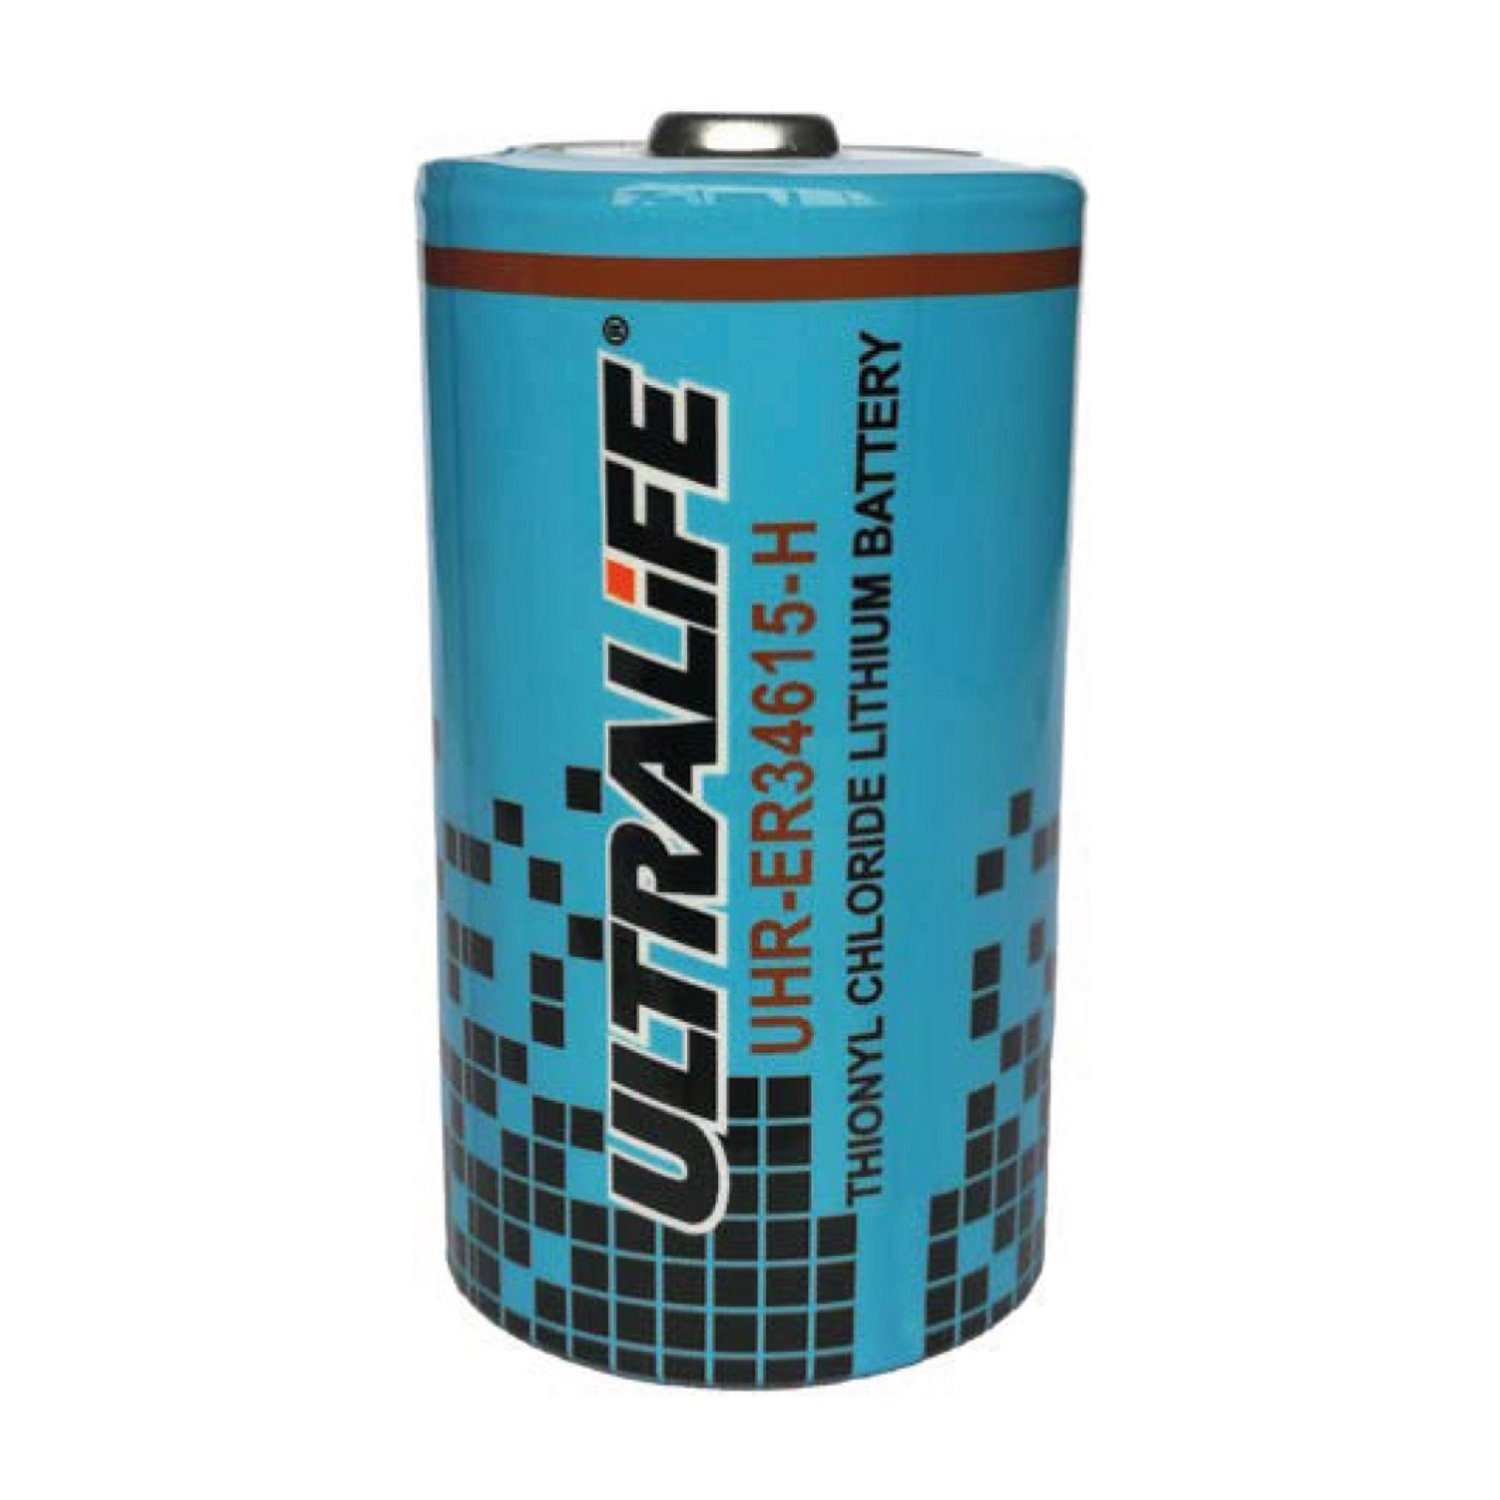 3,6 Zelle Lithium Batterie Hoc Ah Ultralife 14,5 Volt Batterie D UHR-ER34615-H UltraLife